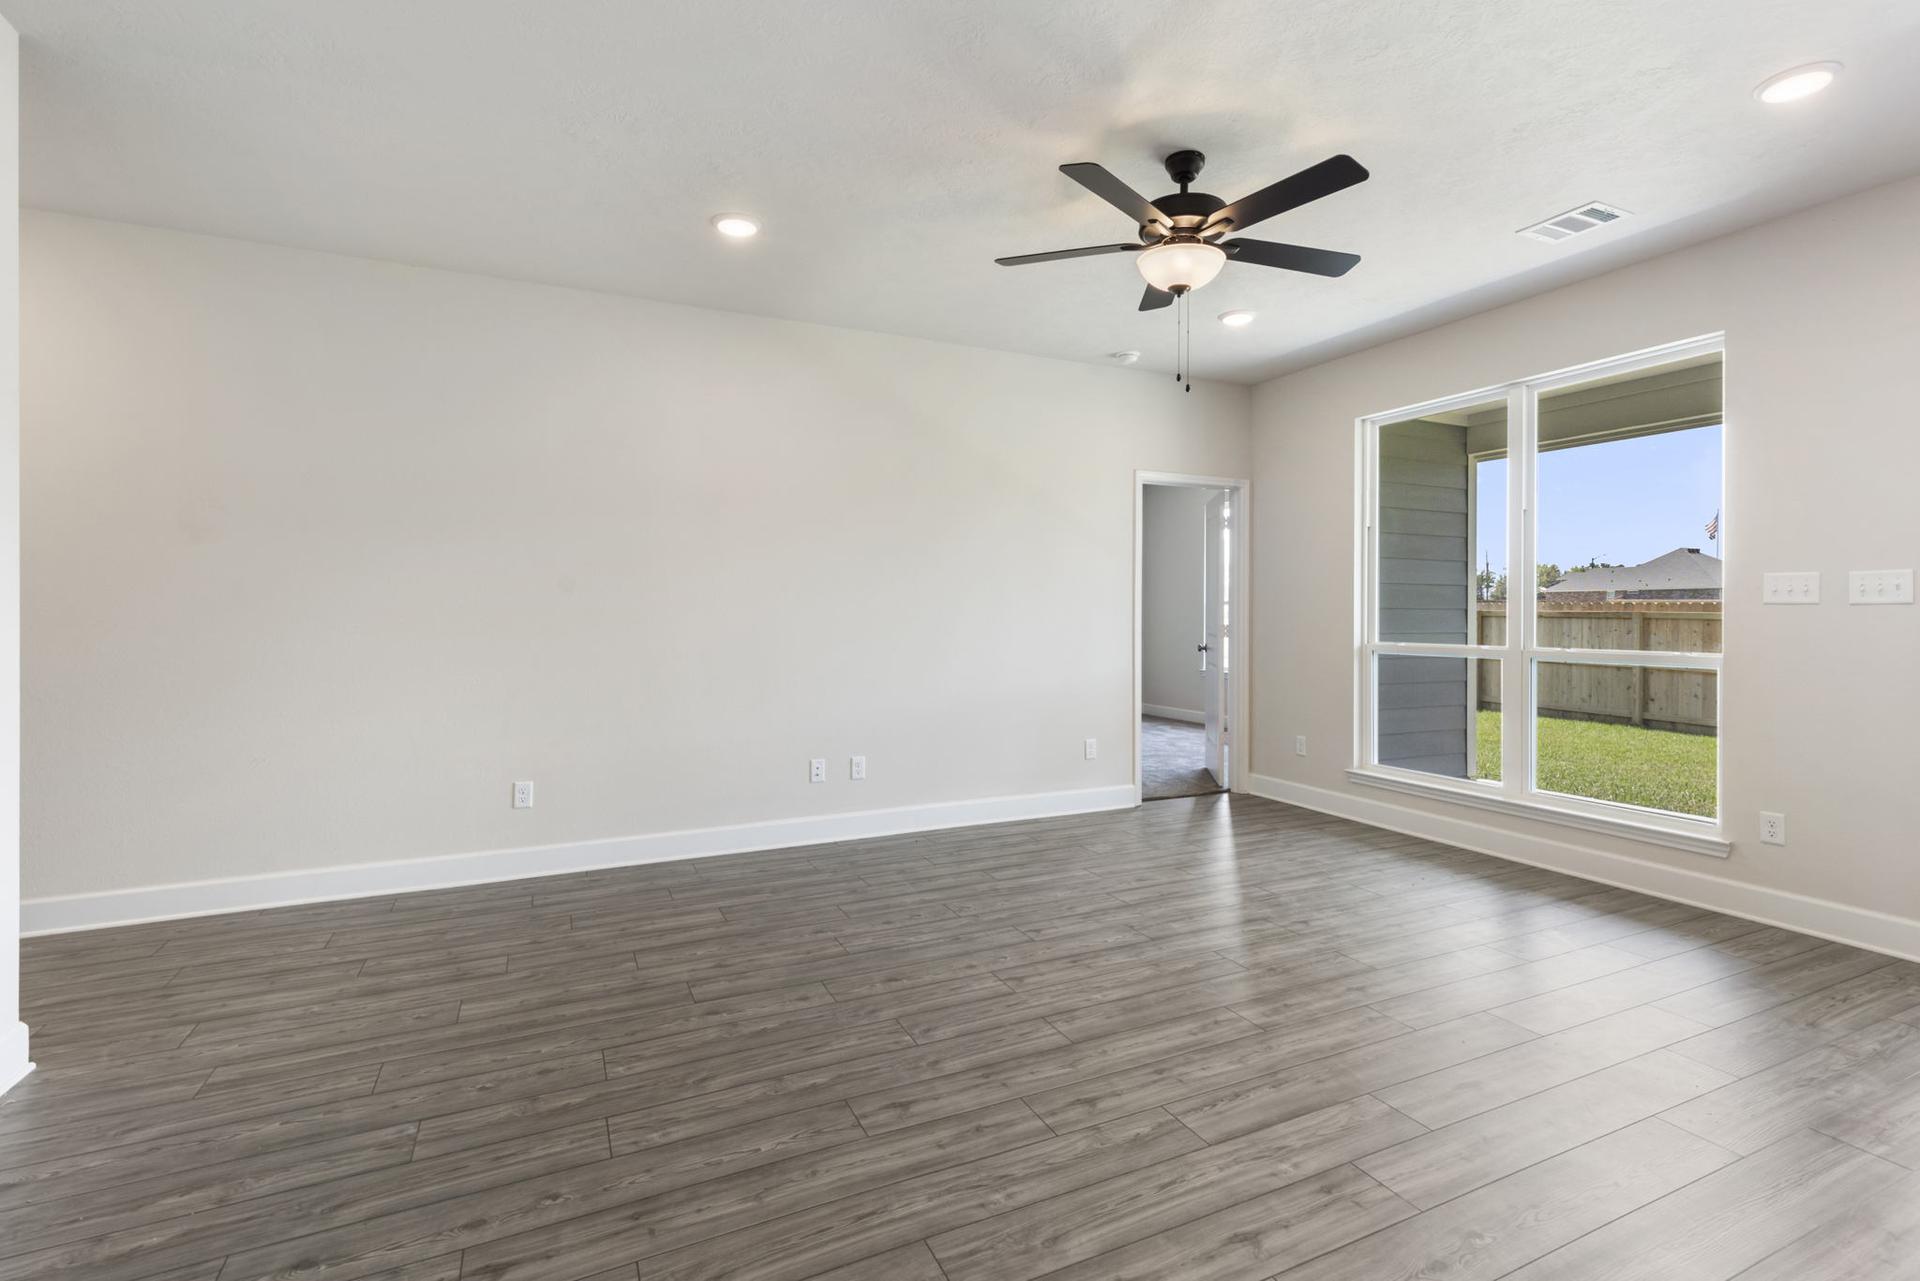 1,800sf New Home in Waco, TX